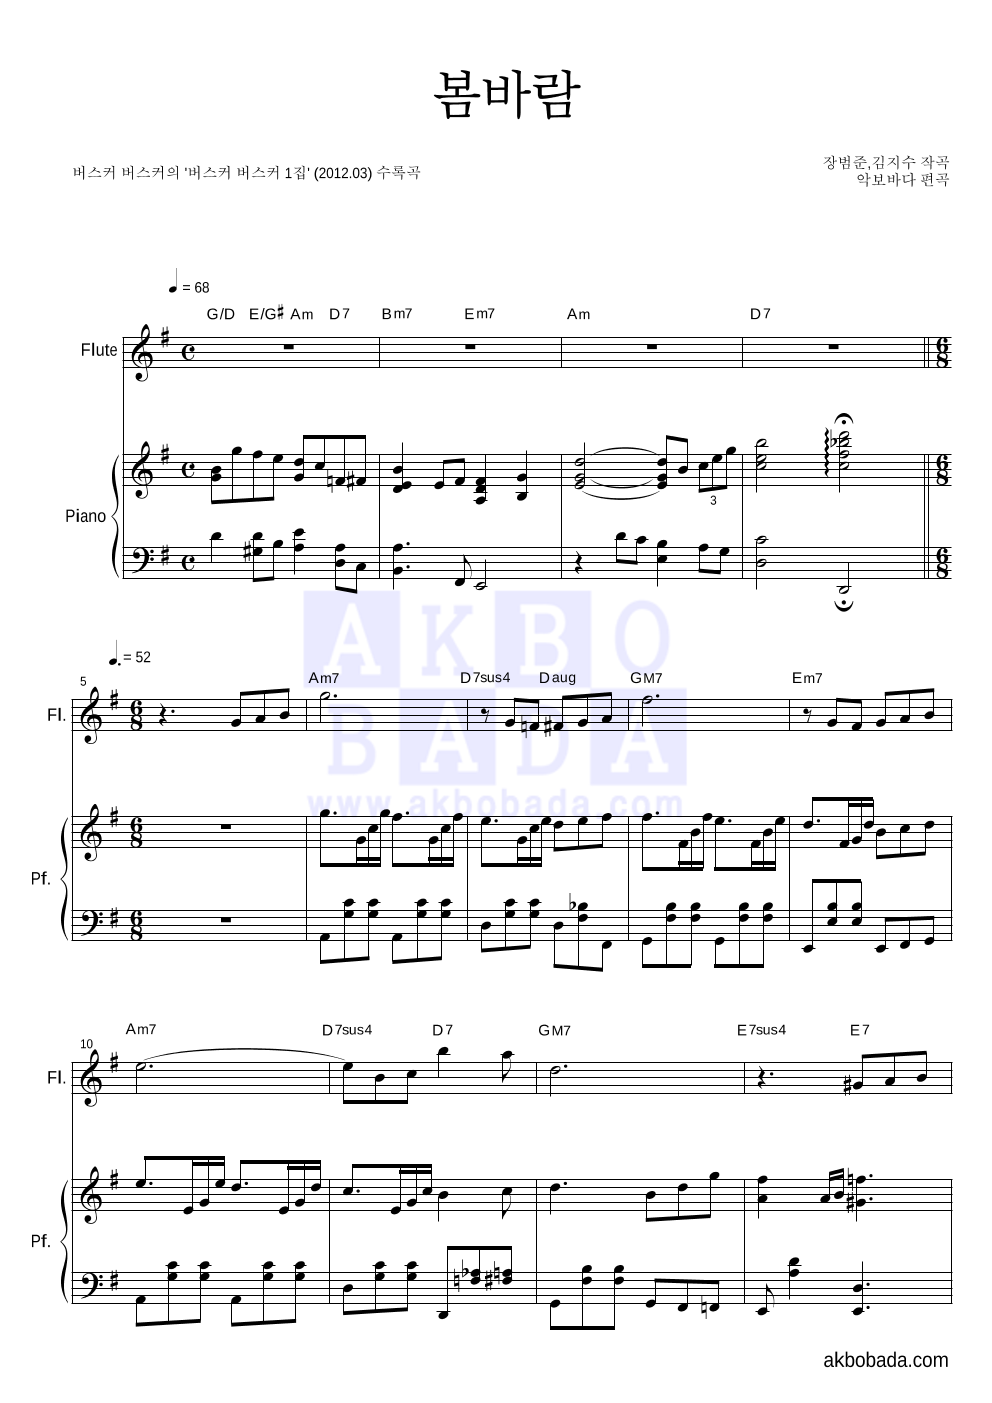 버스커 버스커 - 봄바람 플룻&피아노 악보 